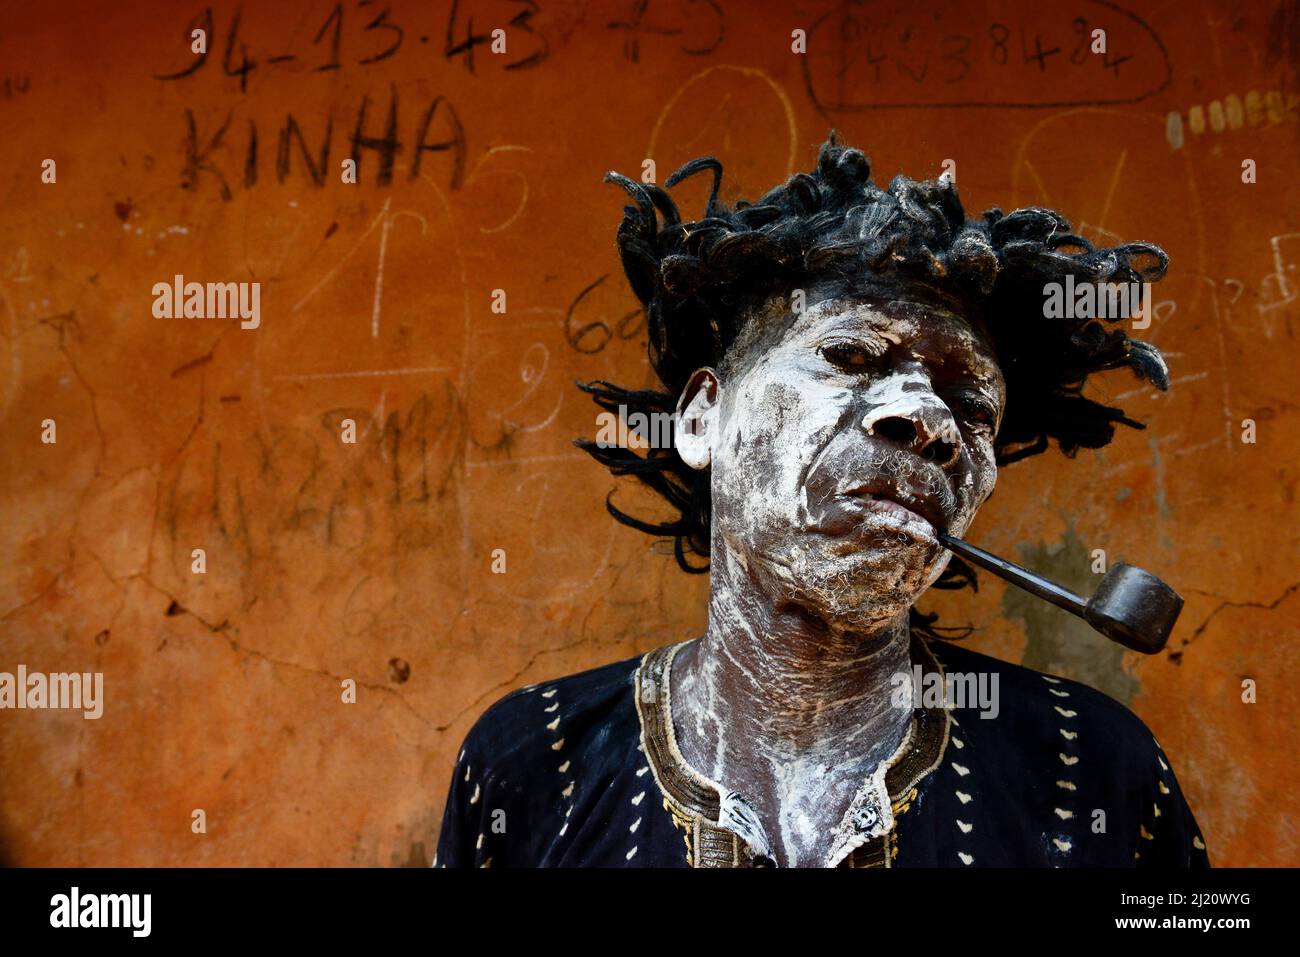 Un homme représente un personnage malade et fumant, lors d'une cérémonie voodoo dans le village de Bohicon, au Bénin. Janvier 2020 Banque D'Images